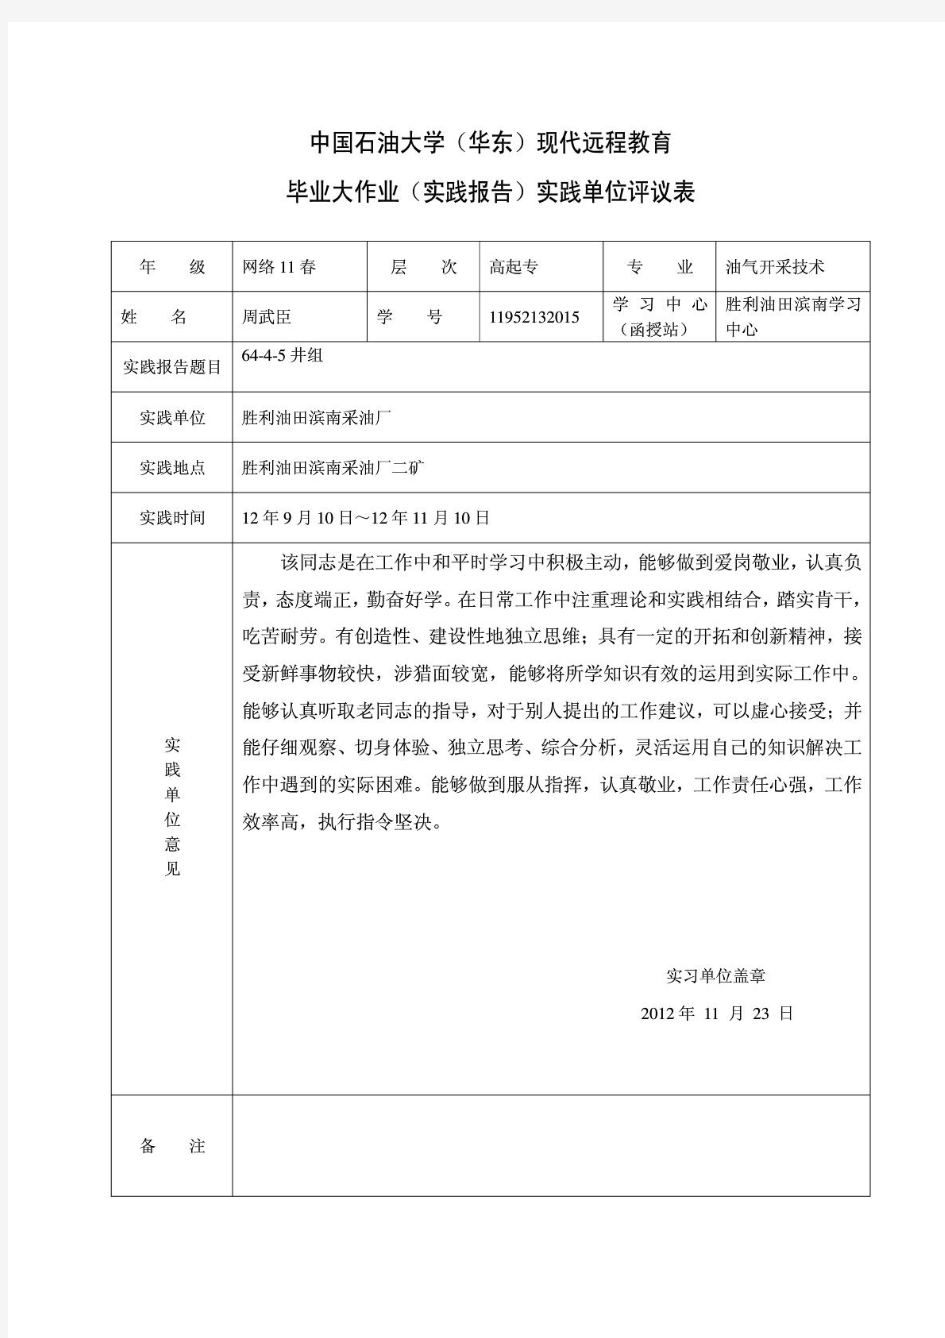 中国石油大学(华东)现代远程教育毕业大作业(实践报告)